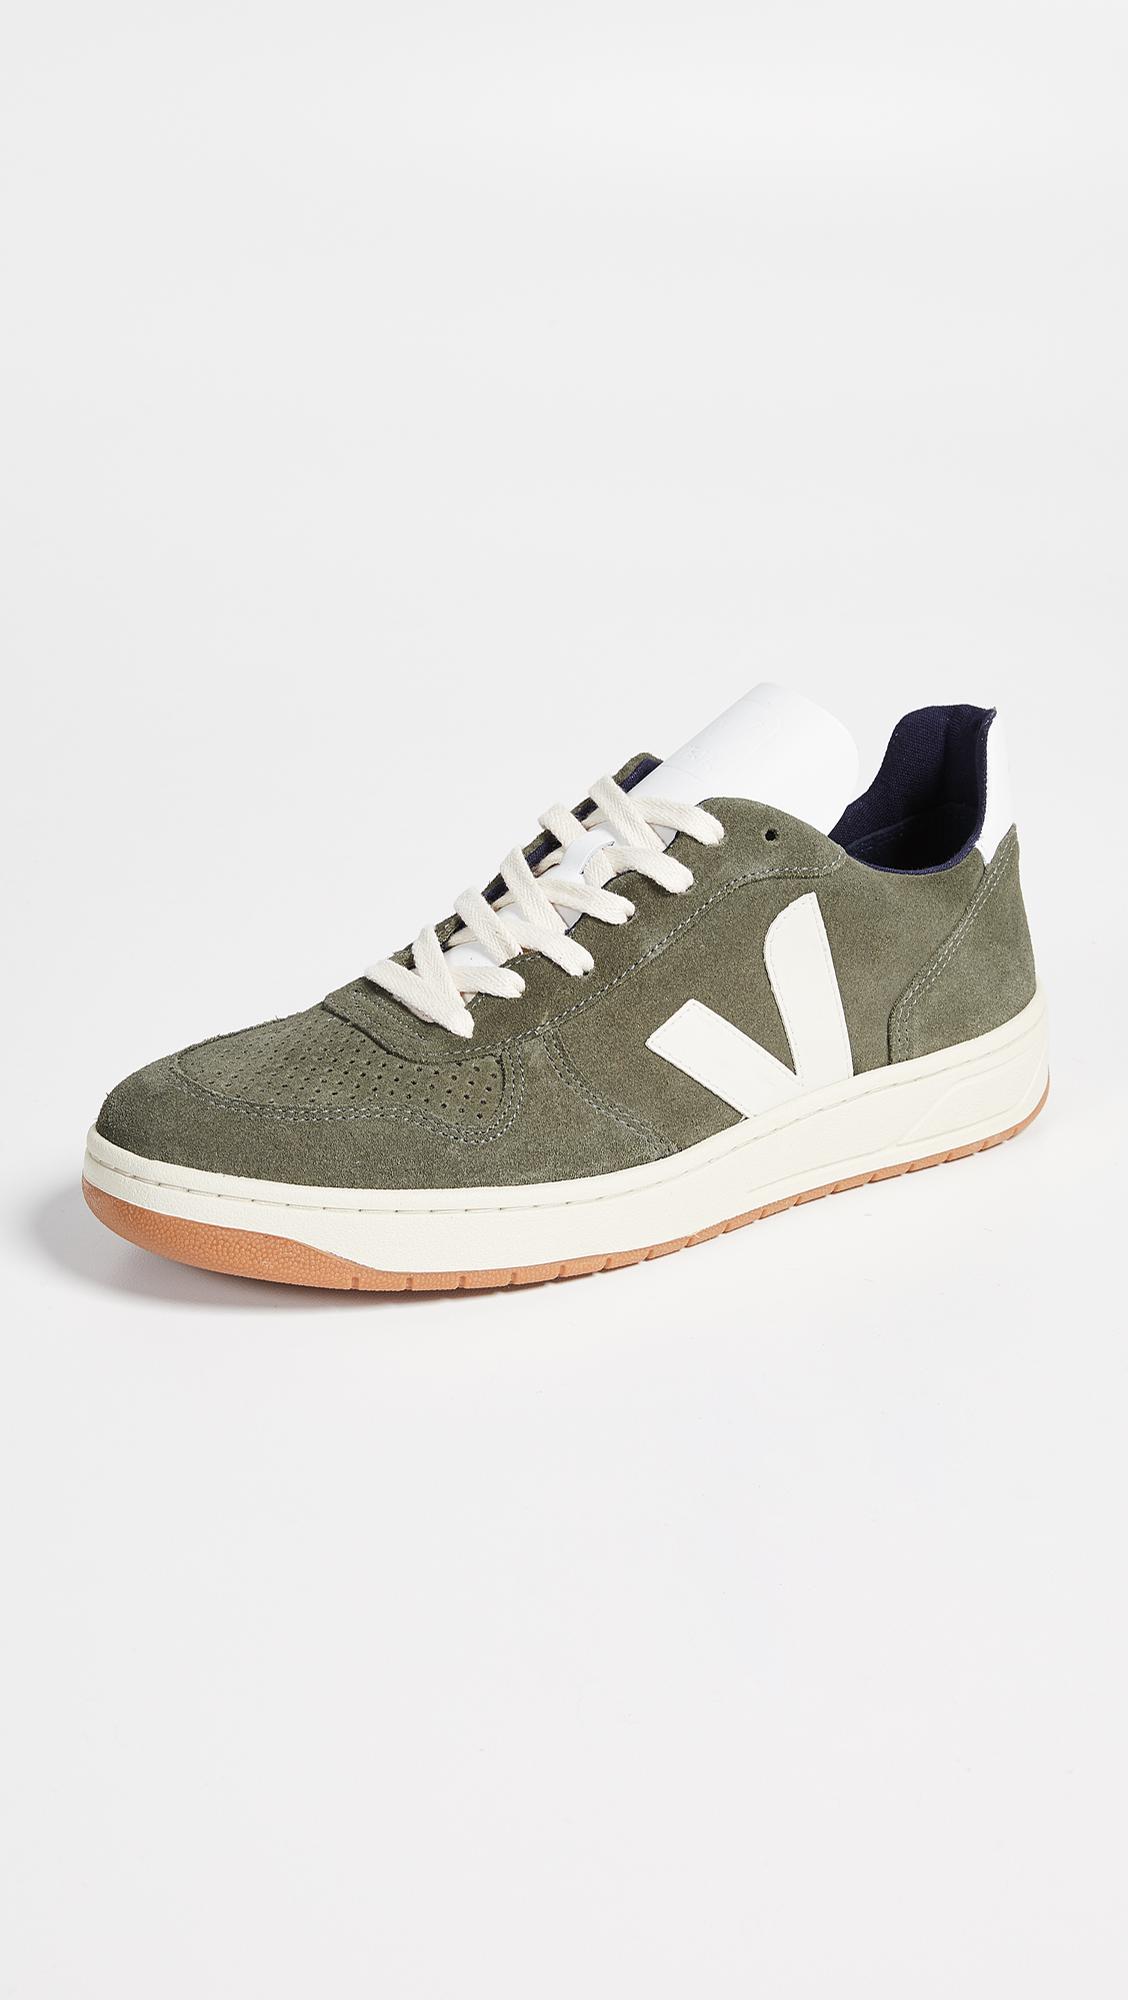 Buy > veja shoes green > in stock